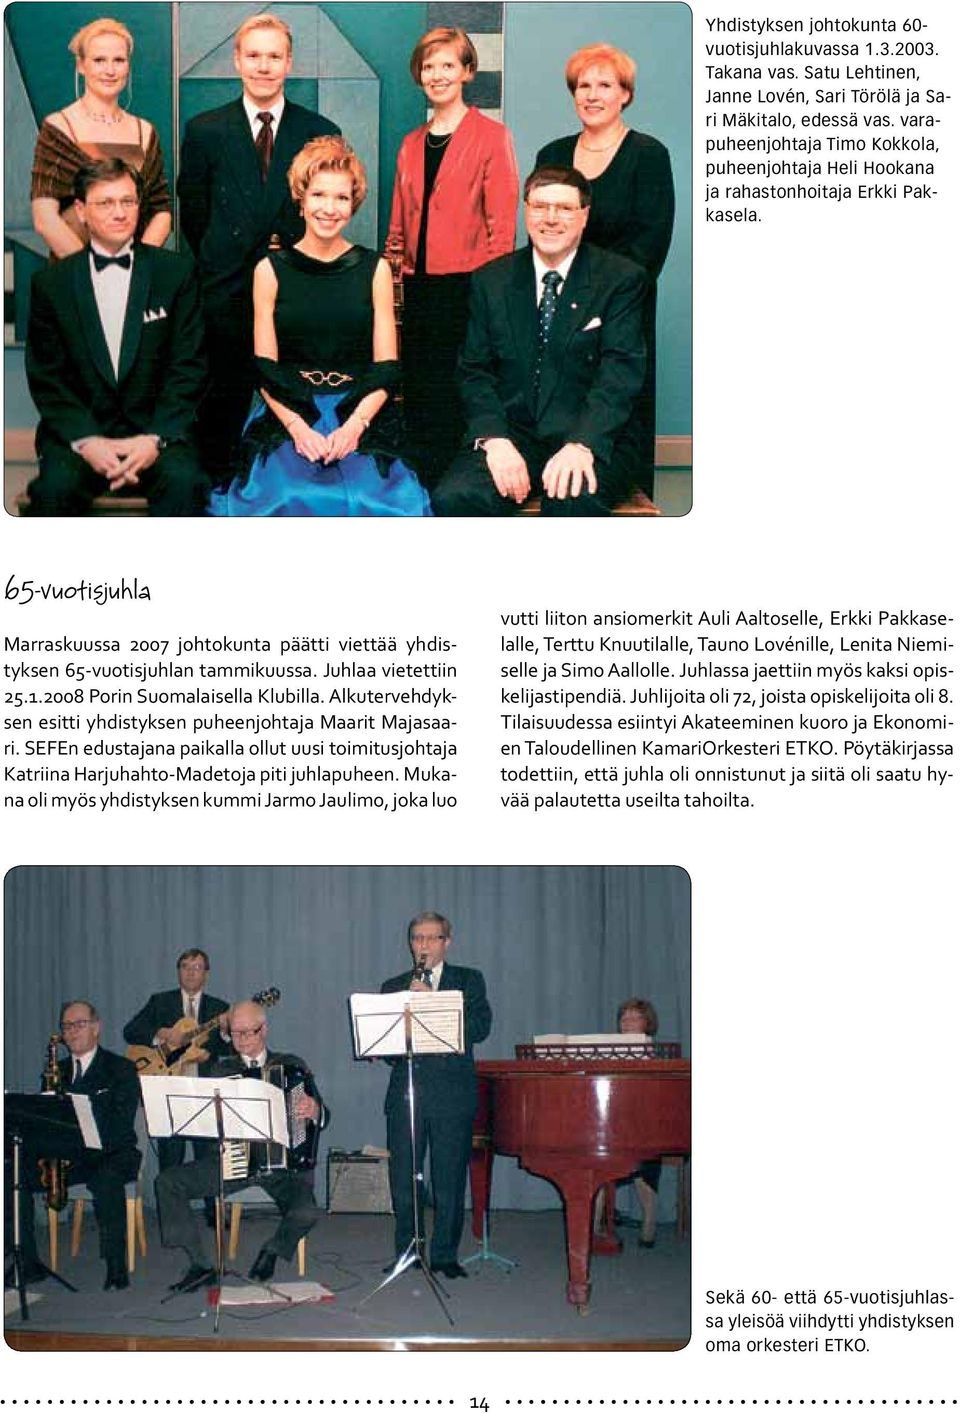 Juhlaa vietettiin 25.1.2008 Porin Suomalaisella Klubilla. Alkutervehdyksen esitti yhdistyksen puheenjohtaja Maarit Majasaari.